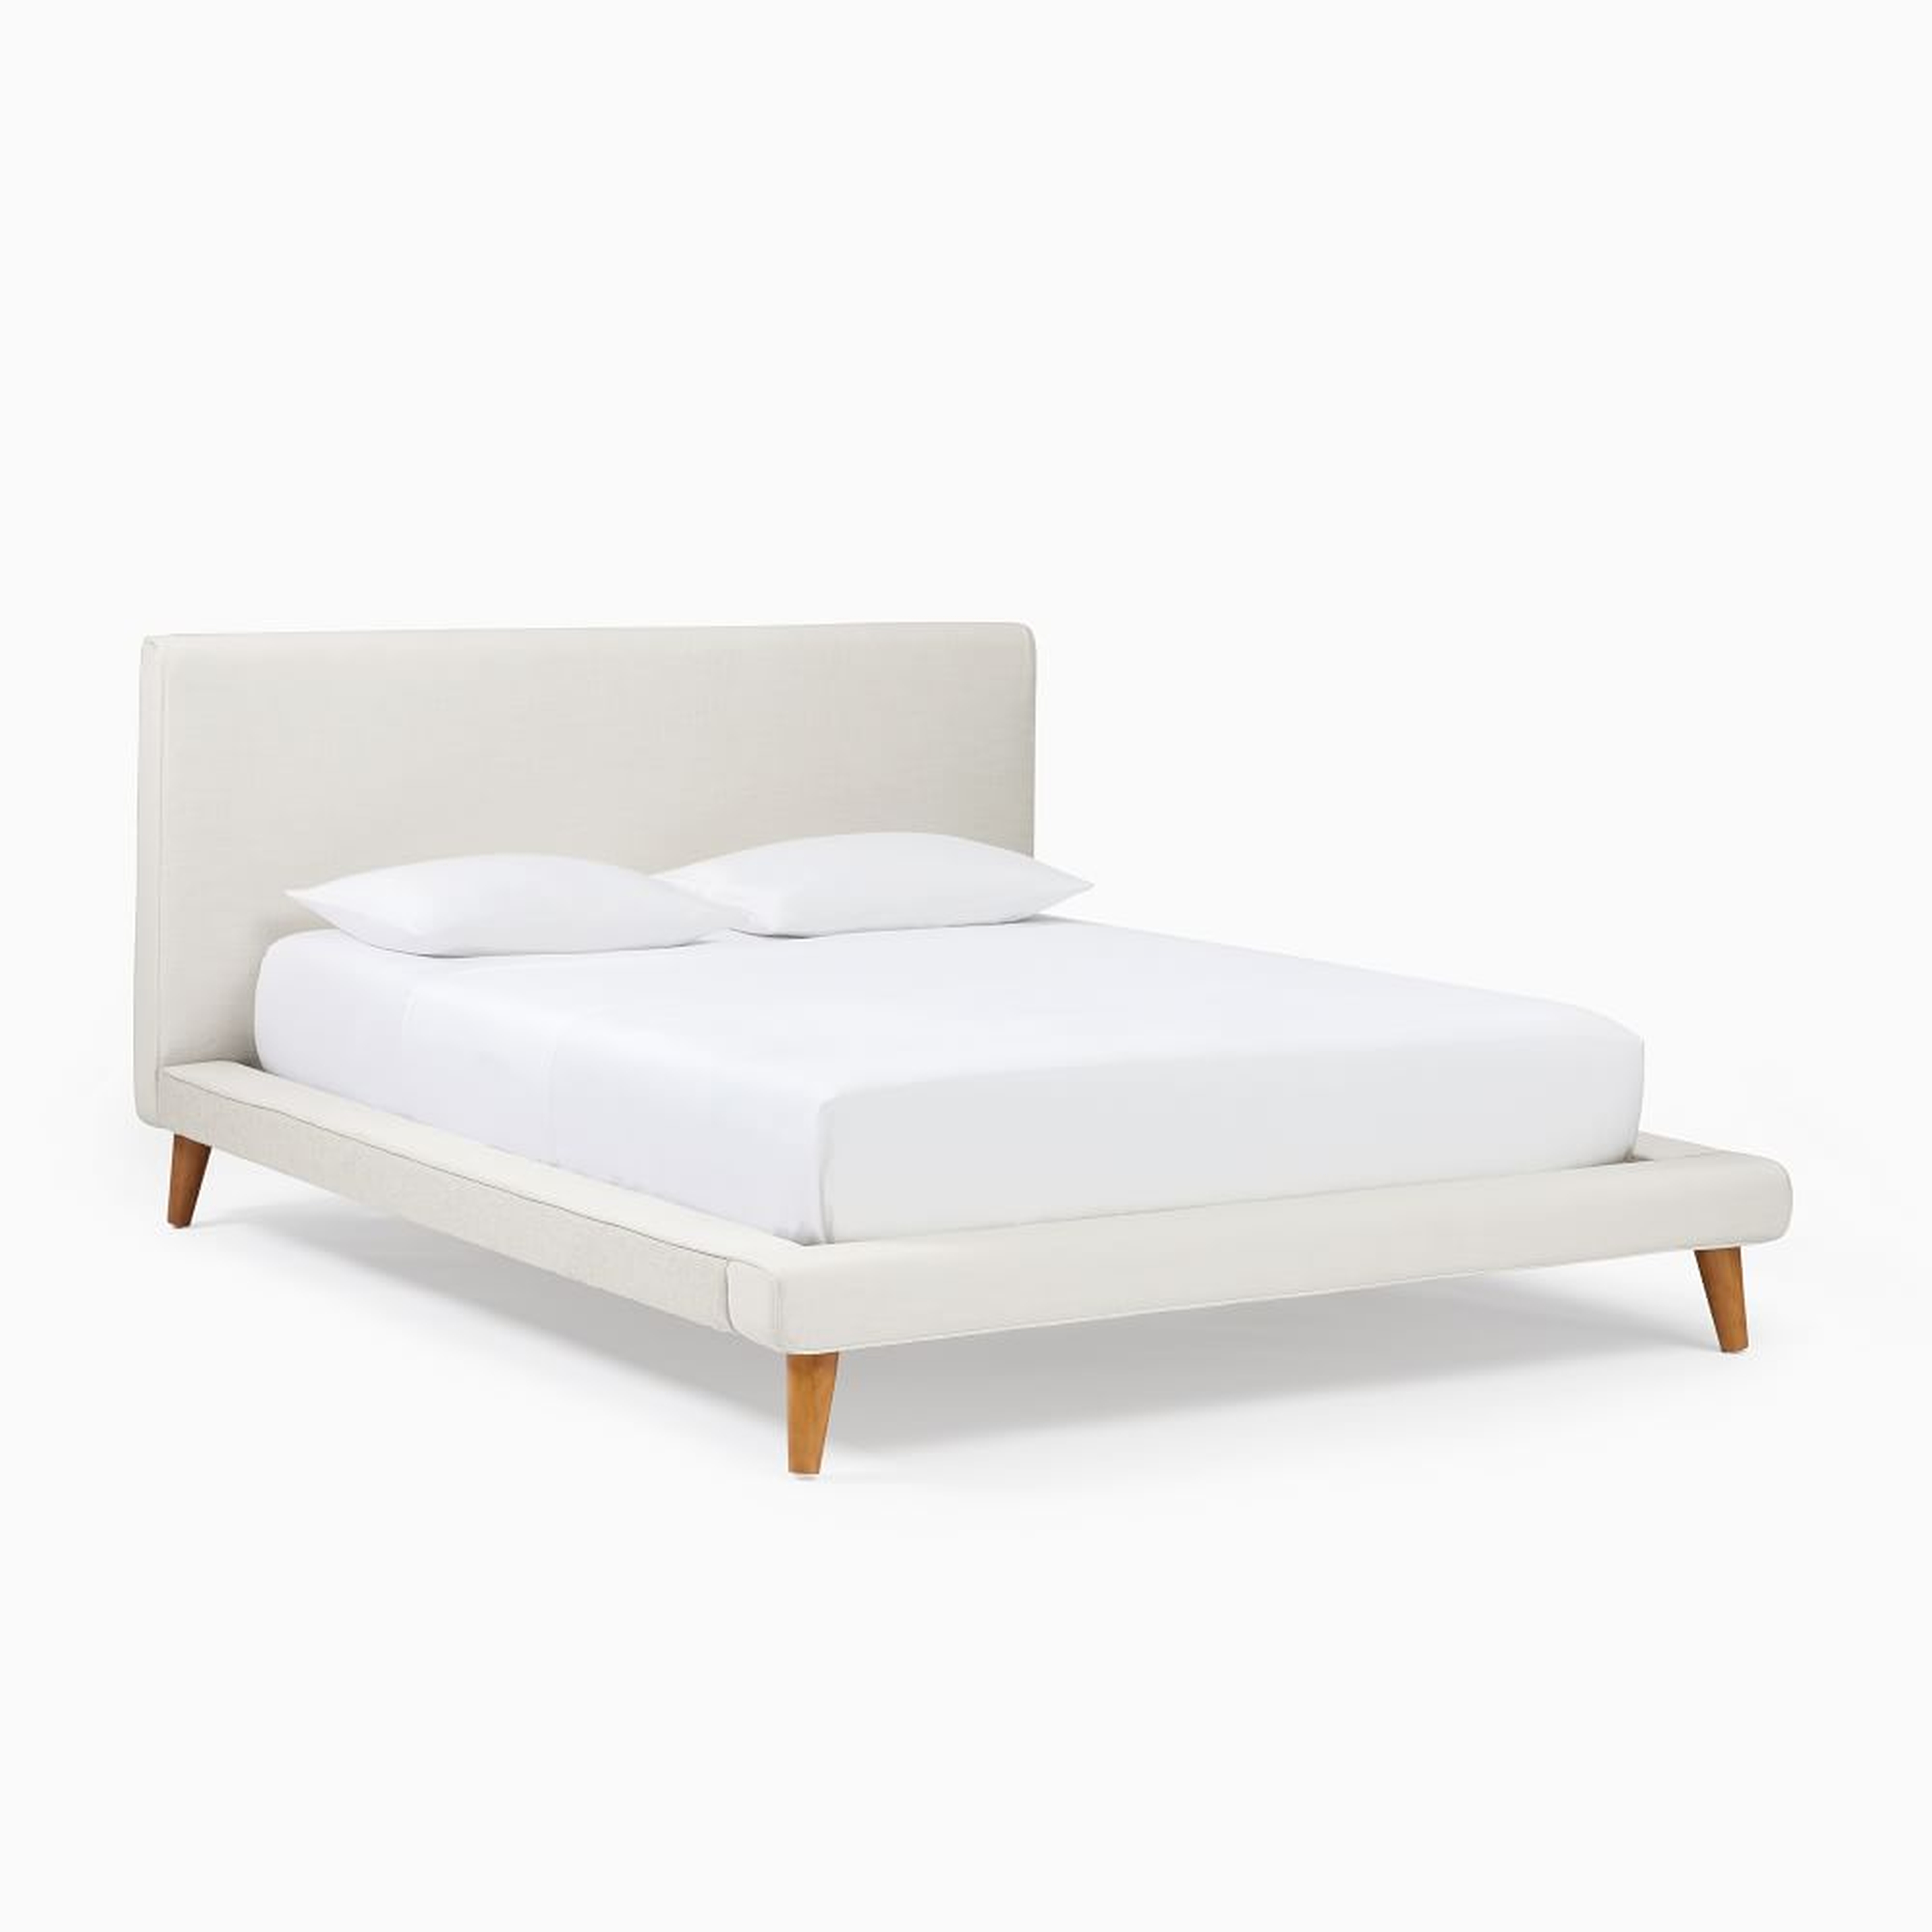 Mod Upholstered Bed, V3 One Box King, Yarn Dyed Linen, Weave, Alabaster - West Elm